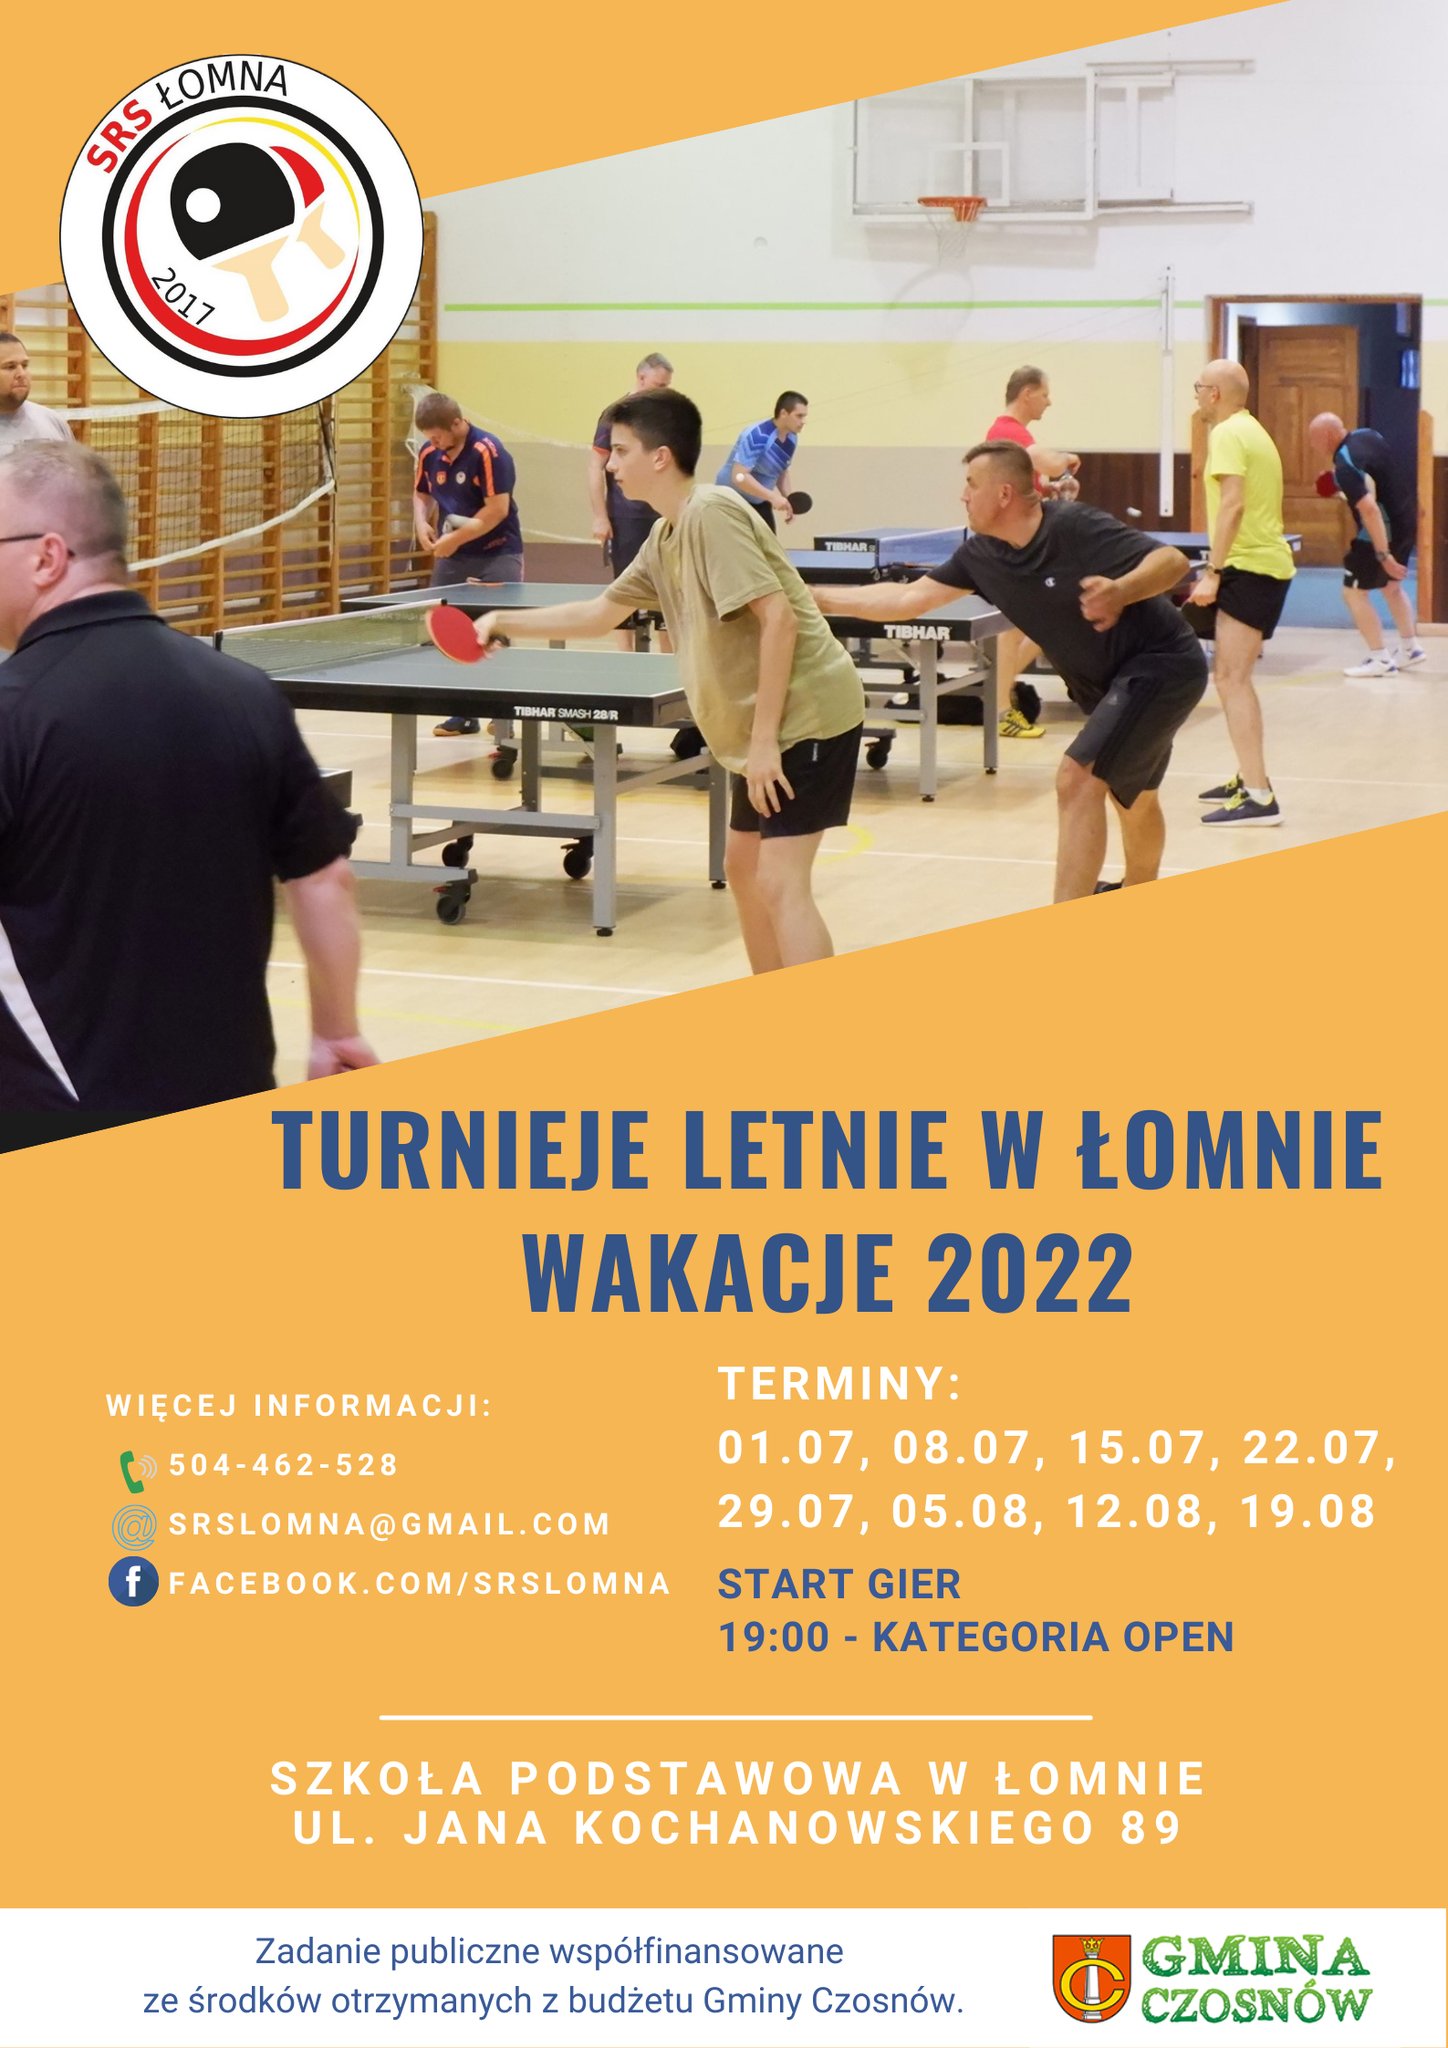 Plakat turnieju Turnieje letnie w Łomnie wakacje 2022 - termin 3